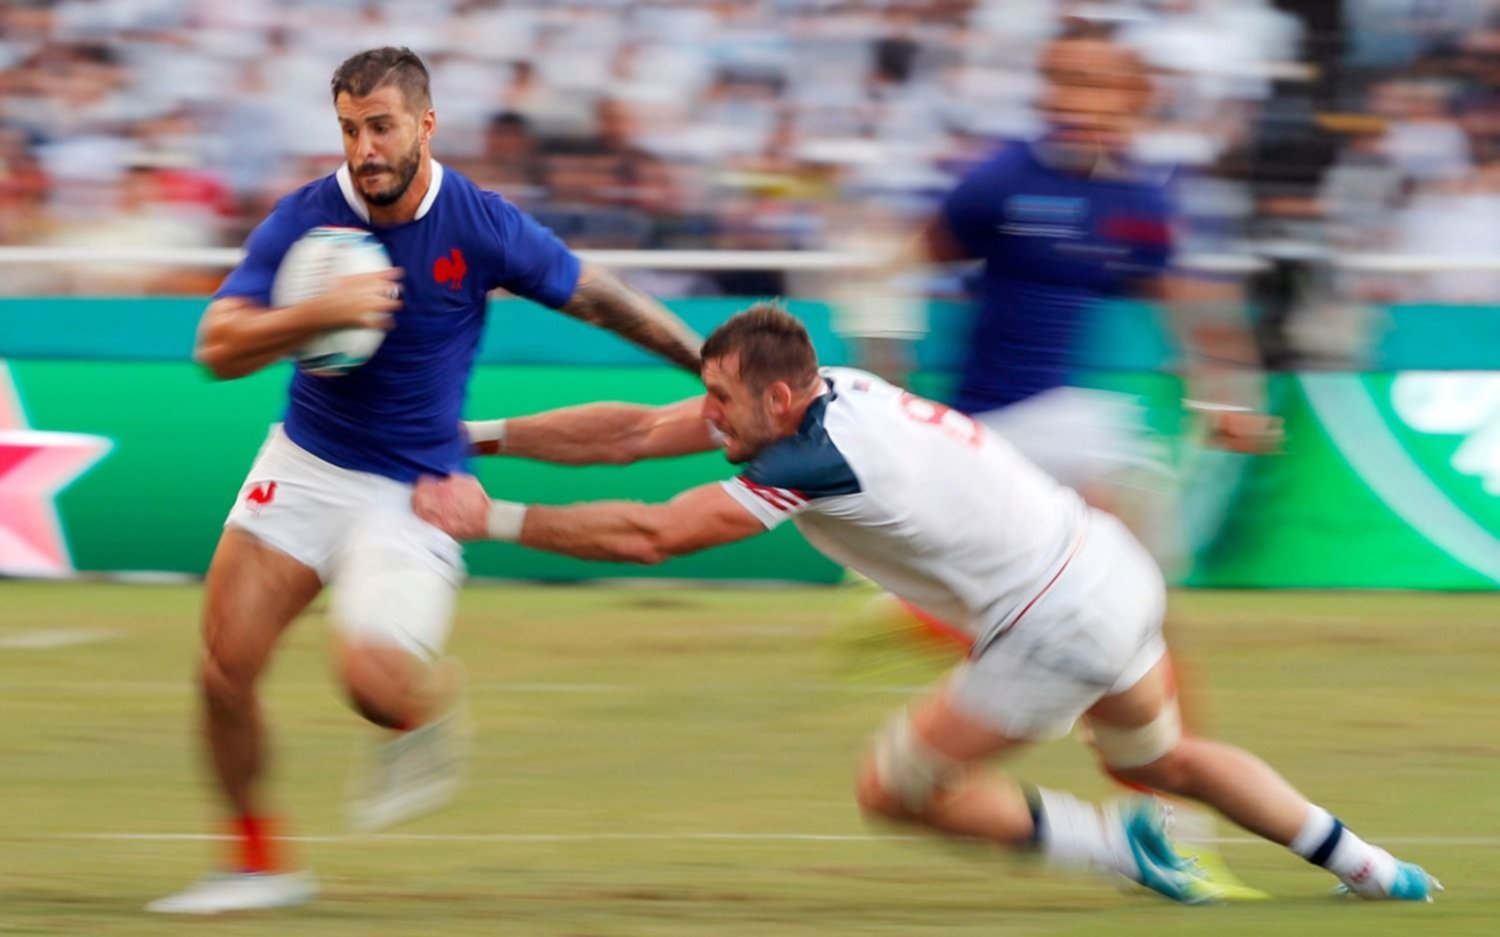 Triunfo de Francia que obliga a Los Pumas a ganar o ganar para seguir vivo en el Mundial de rugby